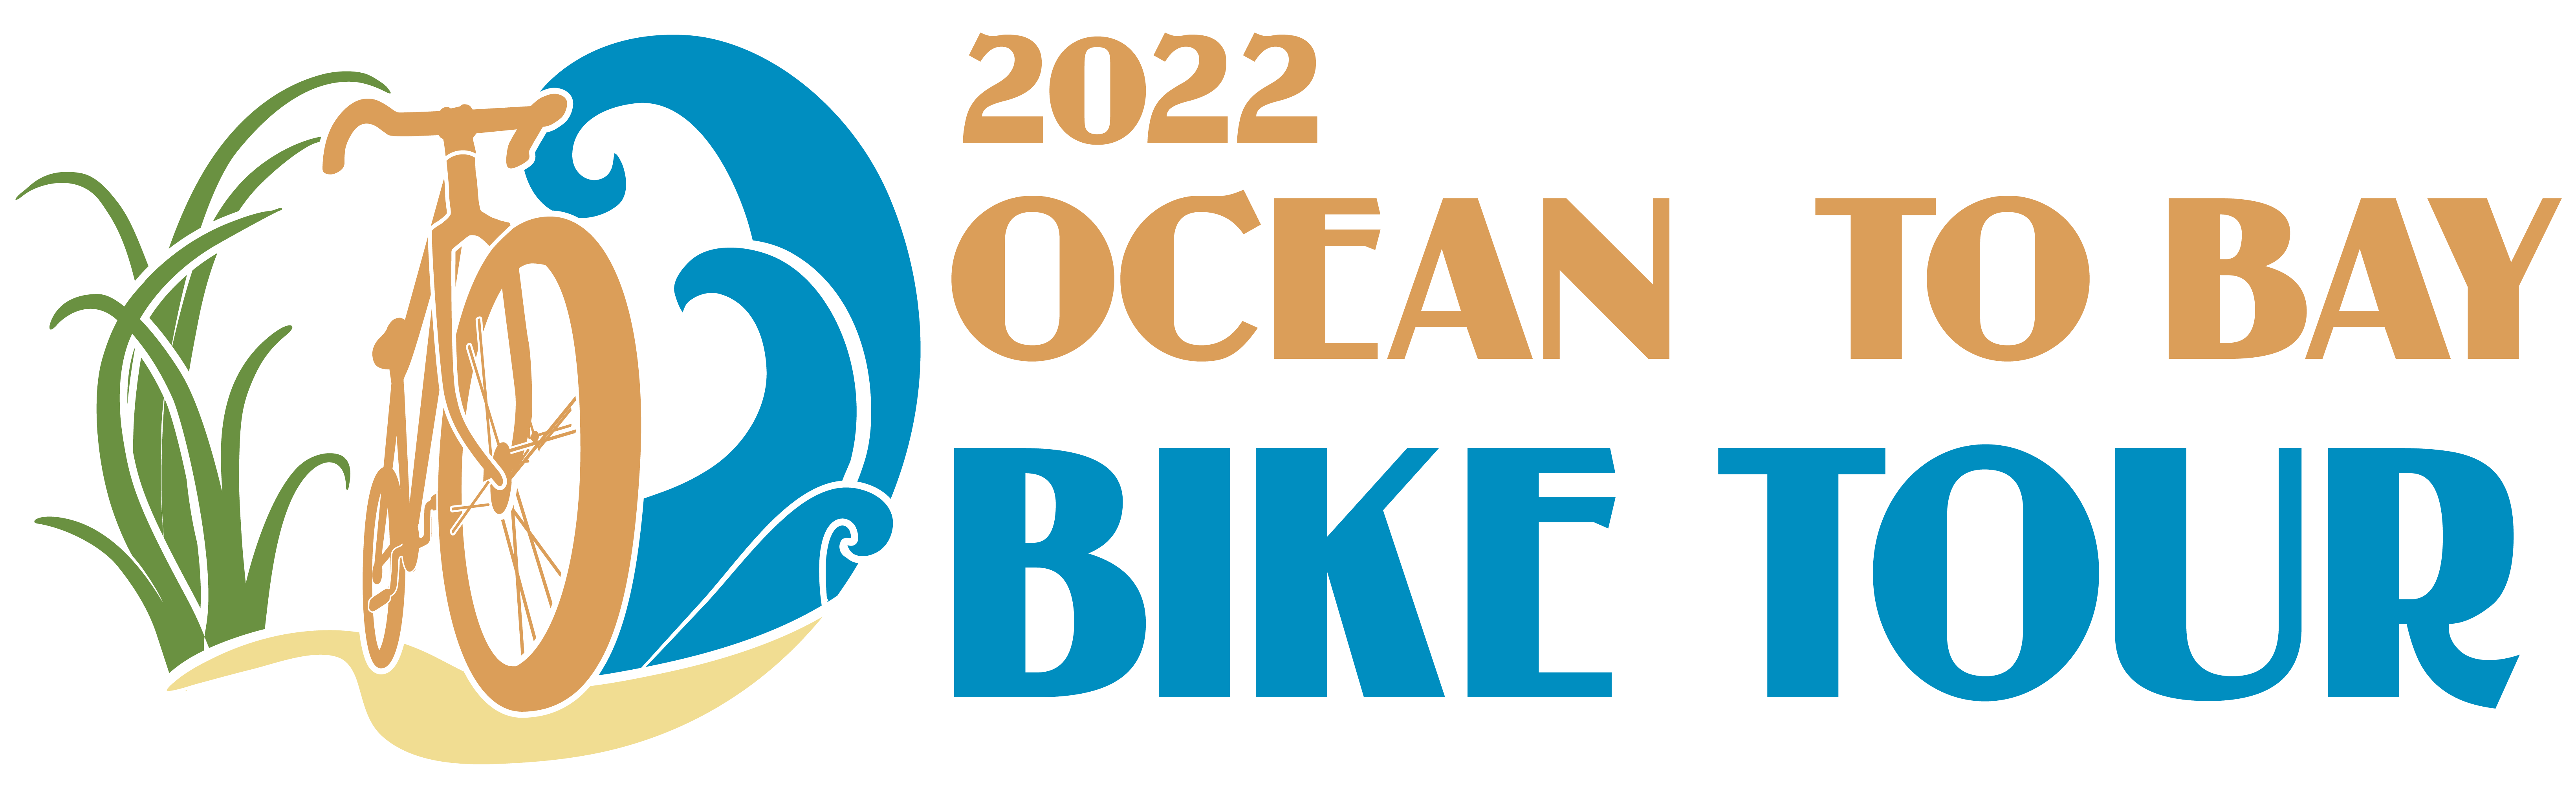 Ocean to Bay Bike Tour logo